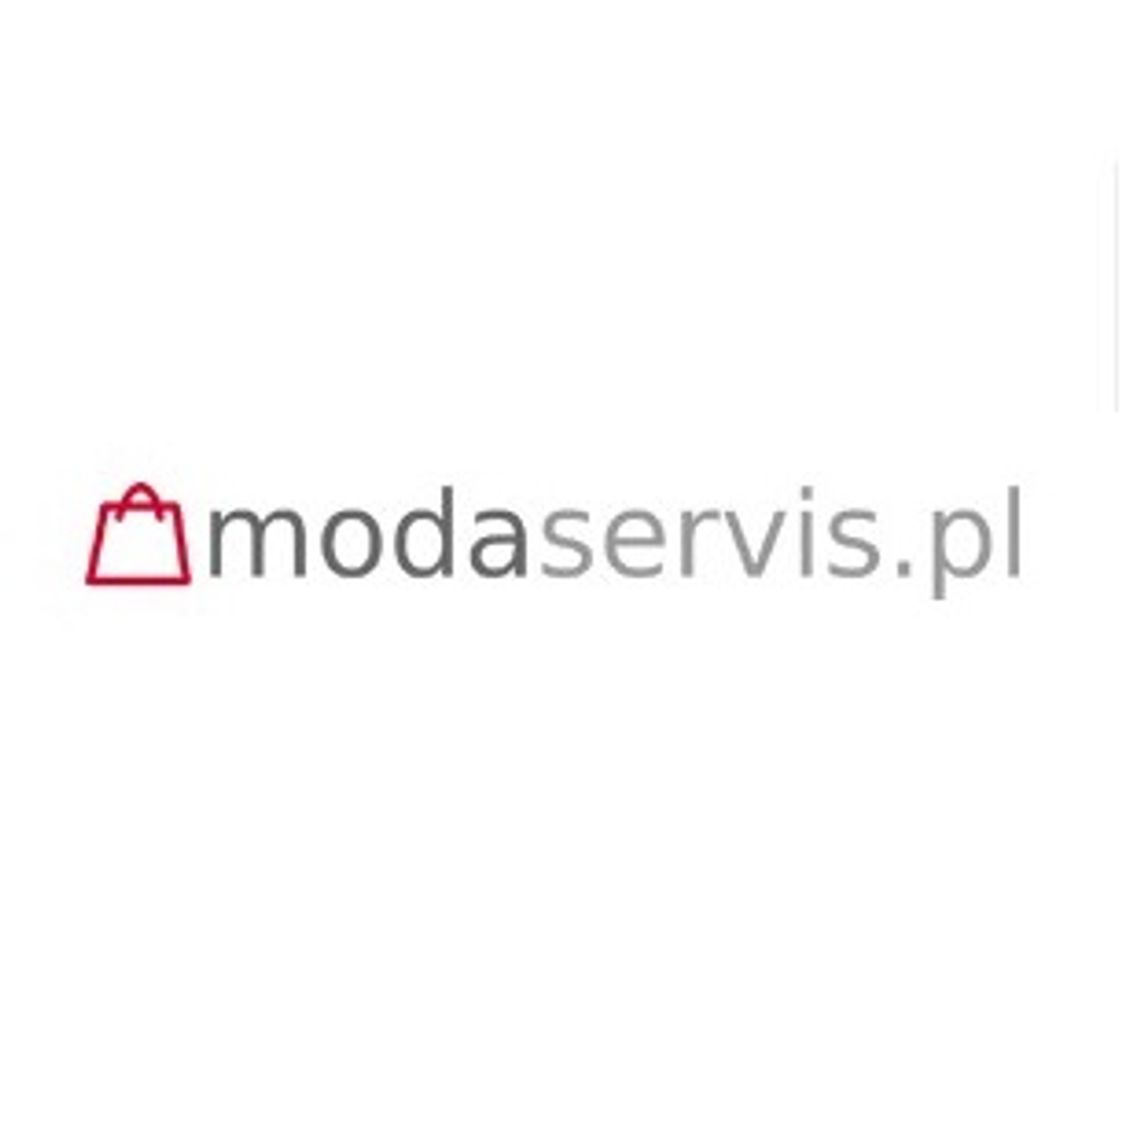 modaservis.pl